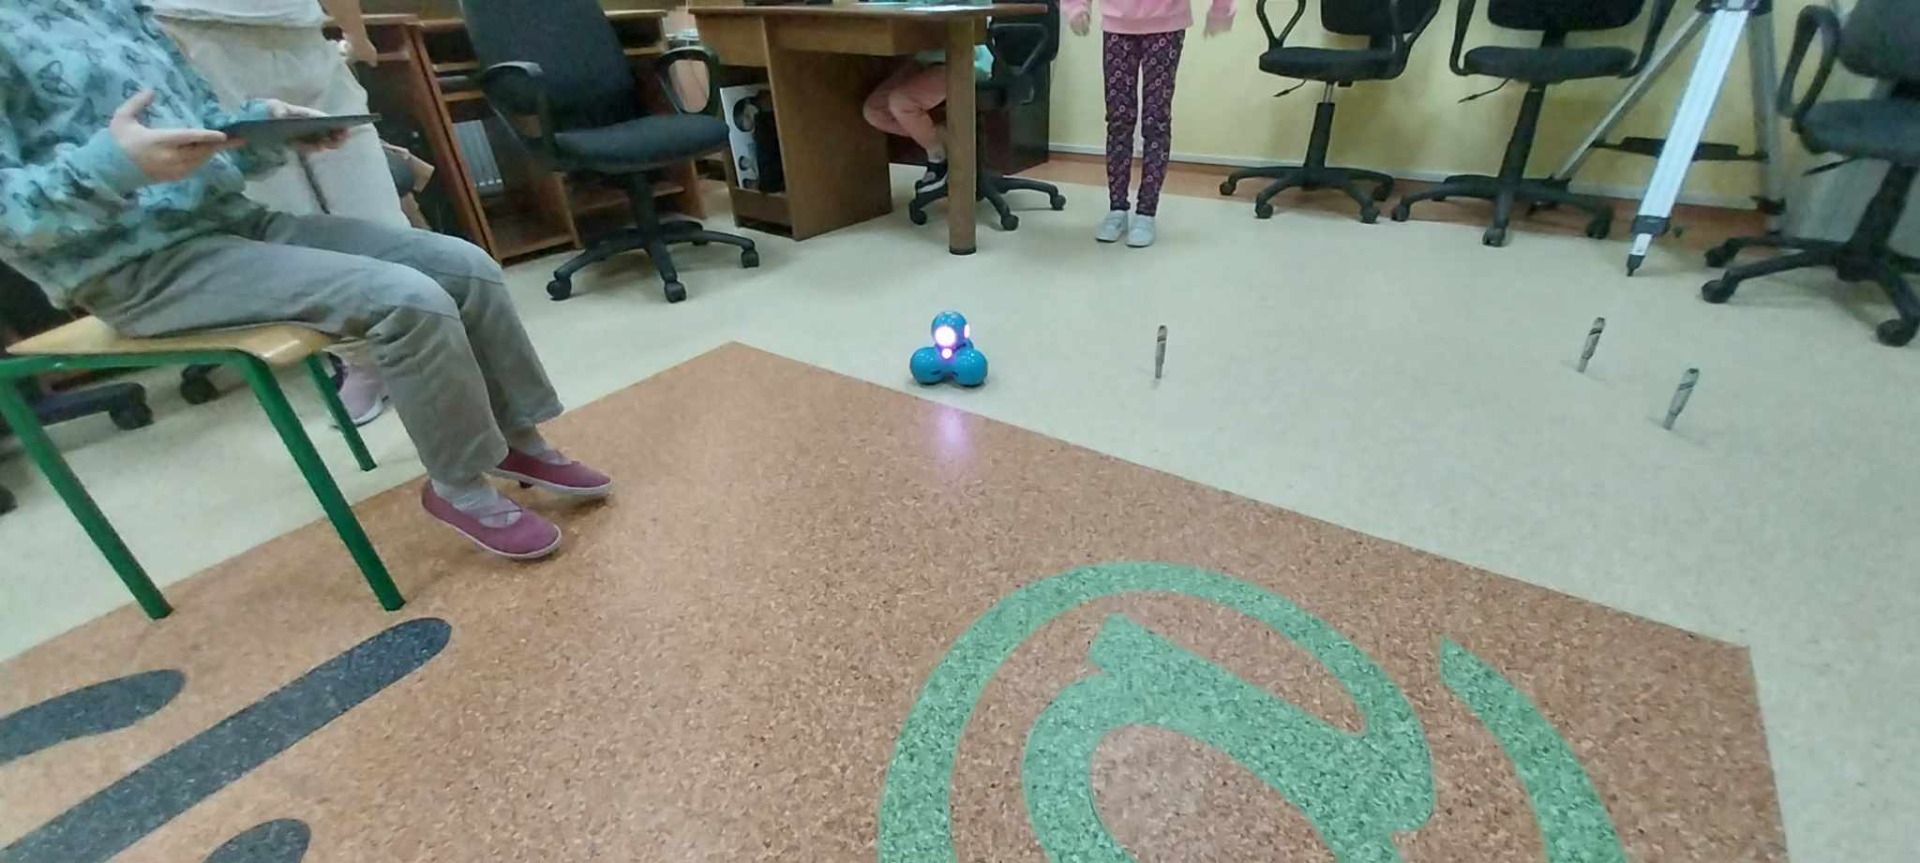 Uczniowie programują roboty w sali informatycznej